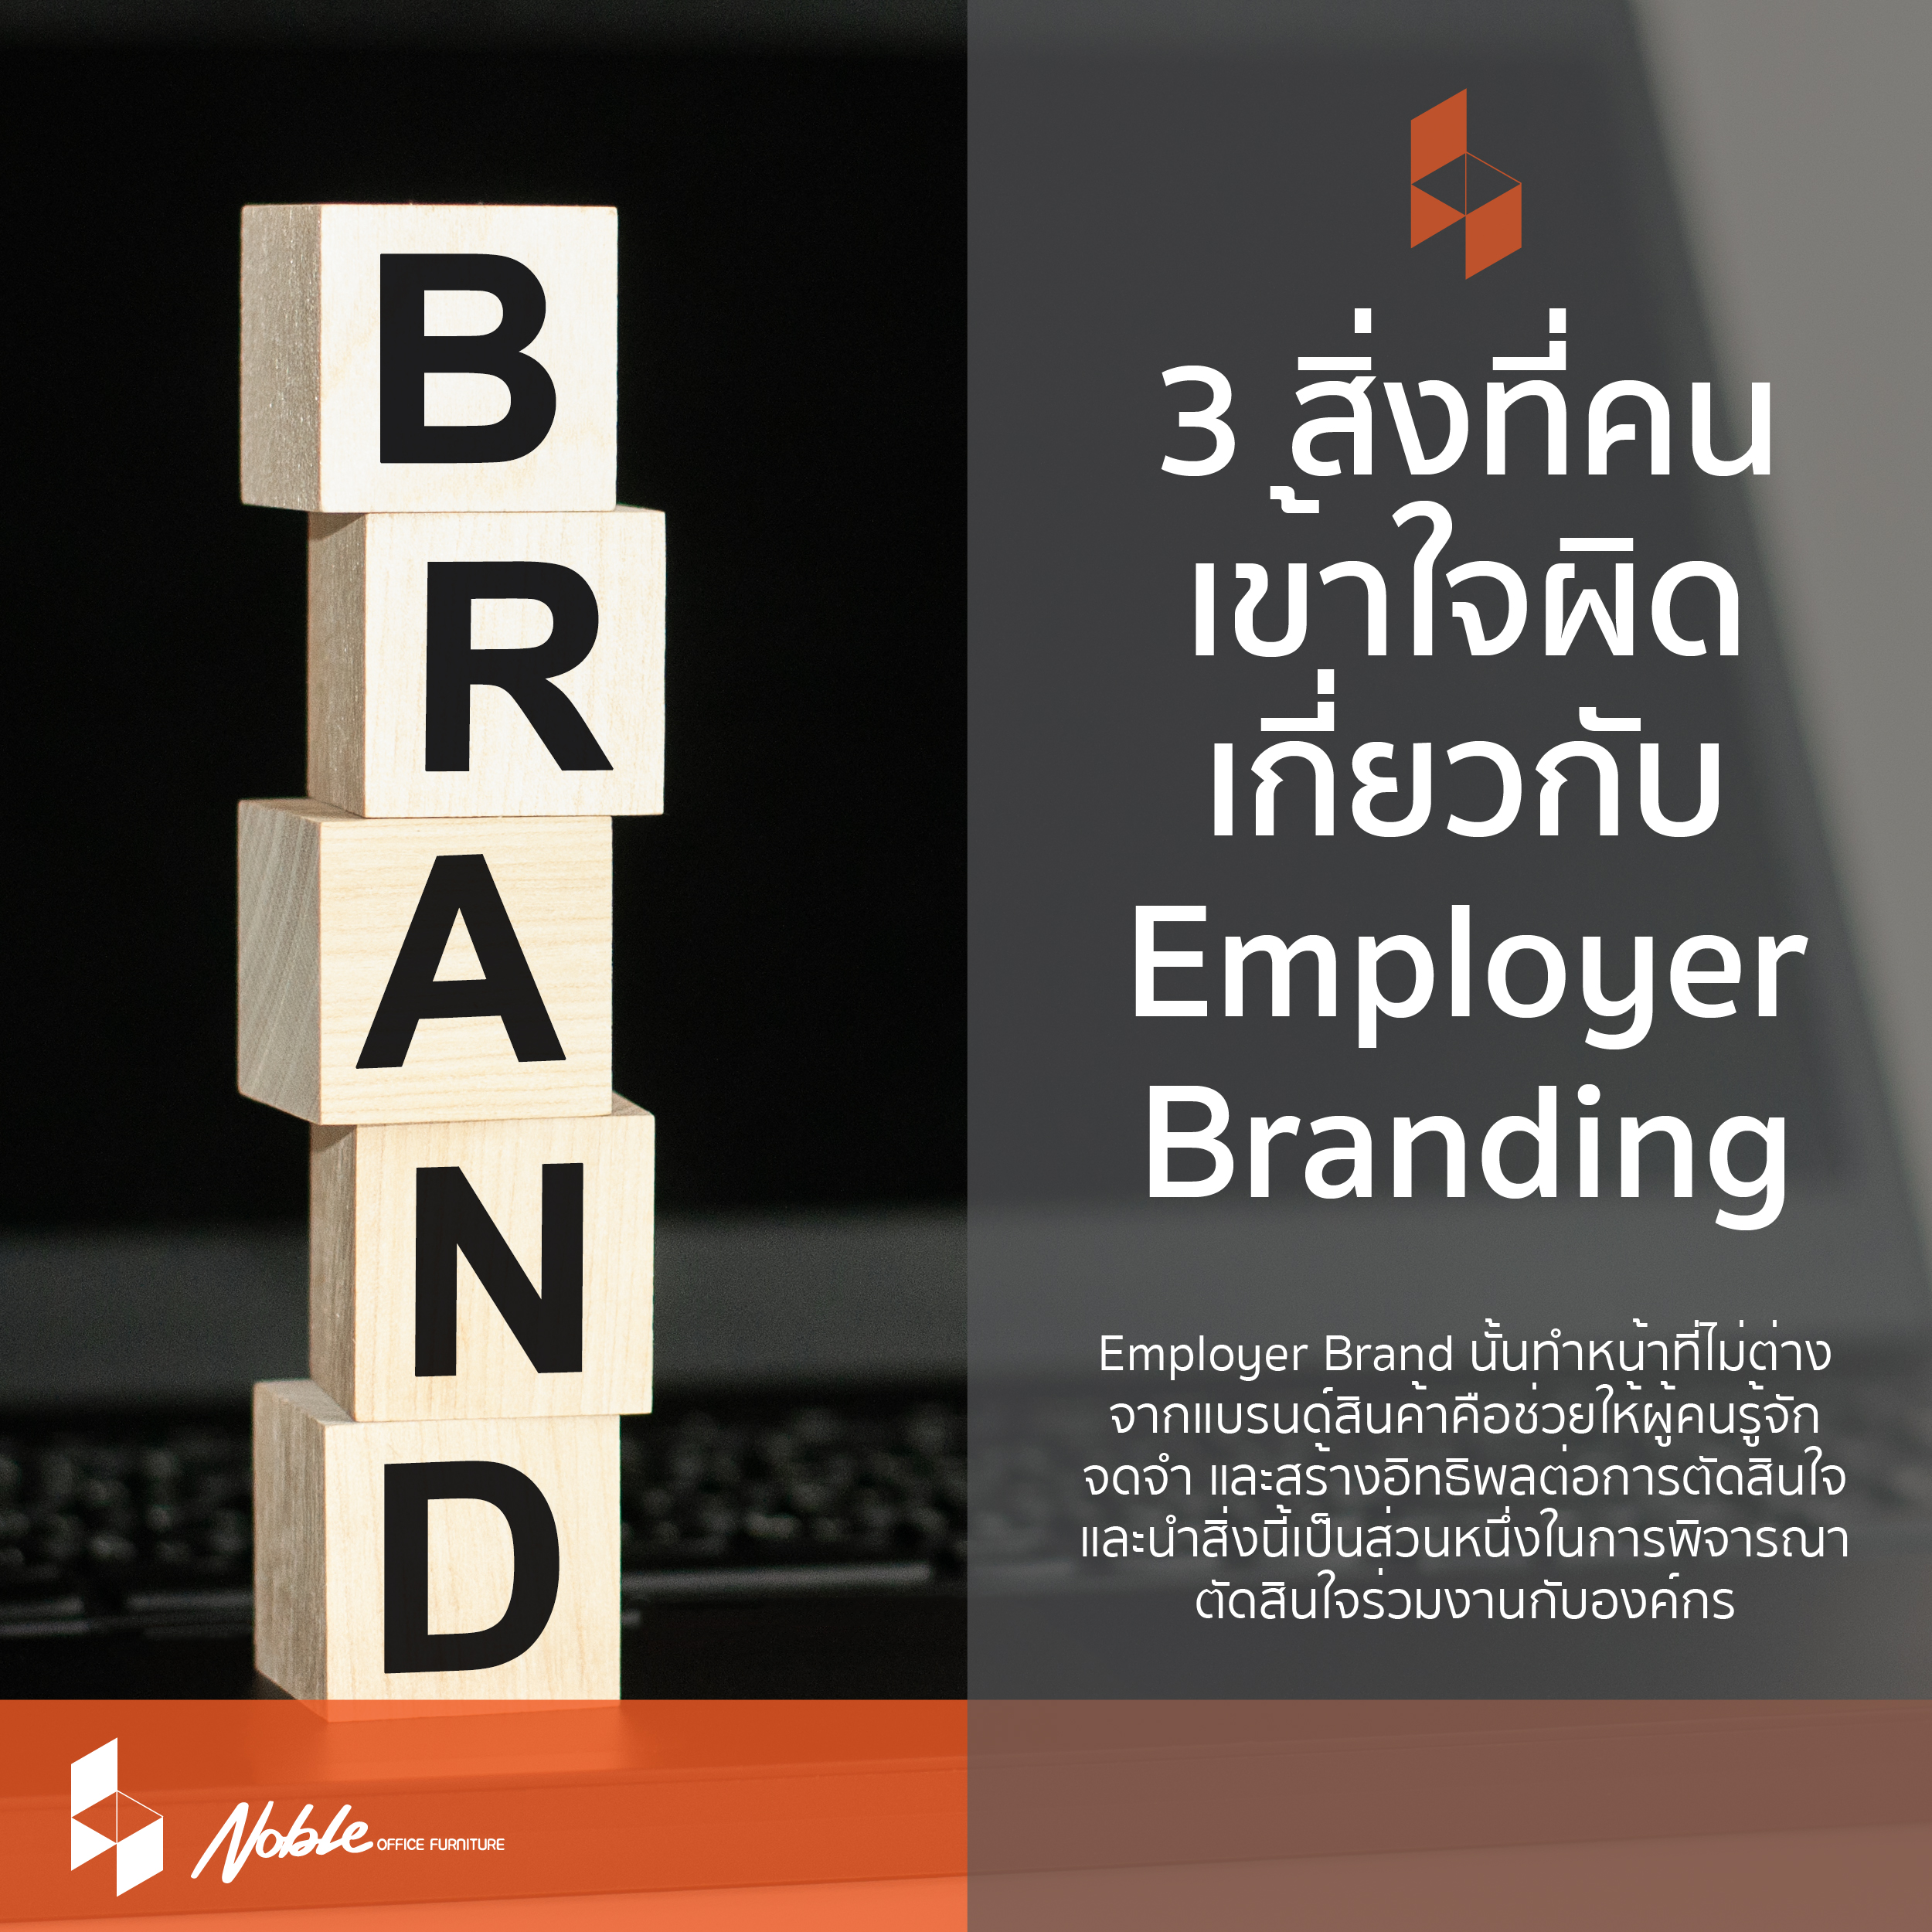 3 สิ่งที่คนเข้าใจผิด เกี่ยวกับ Employer Brand 